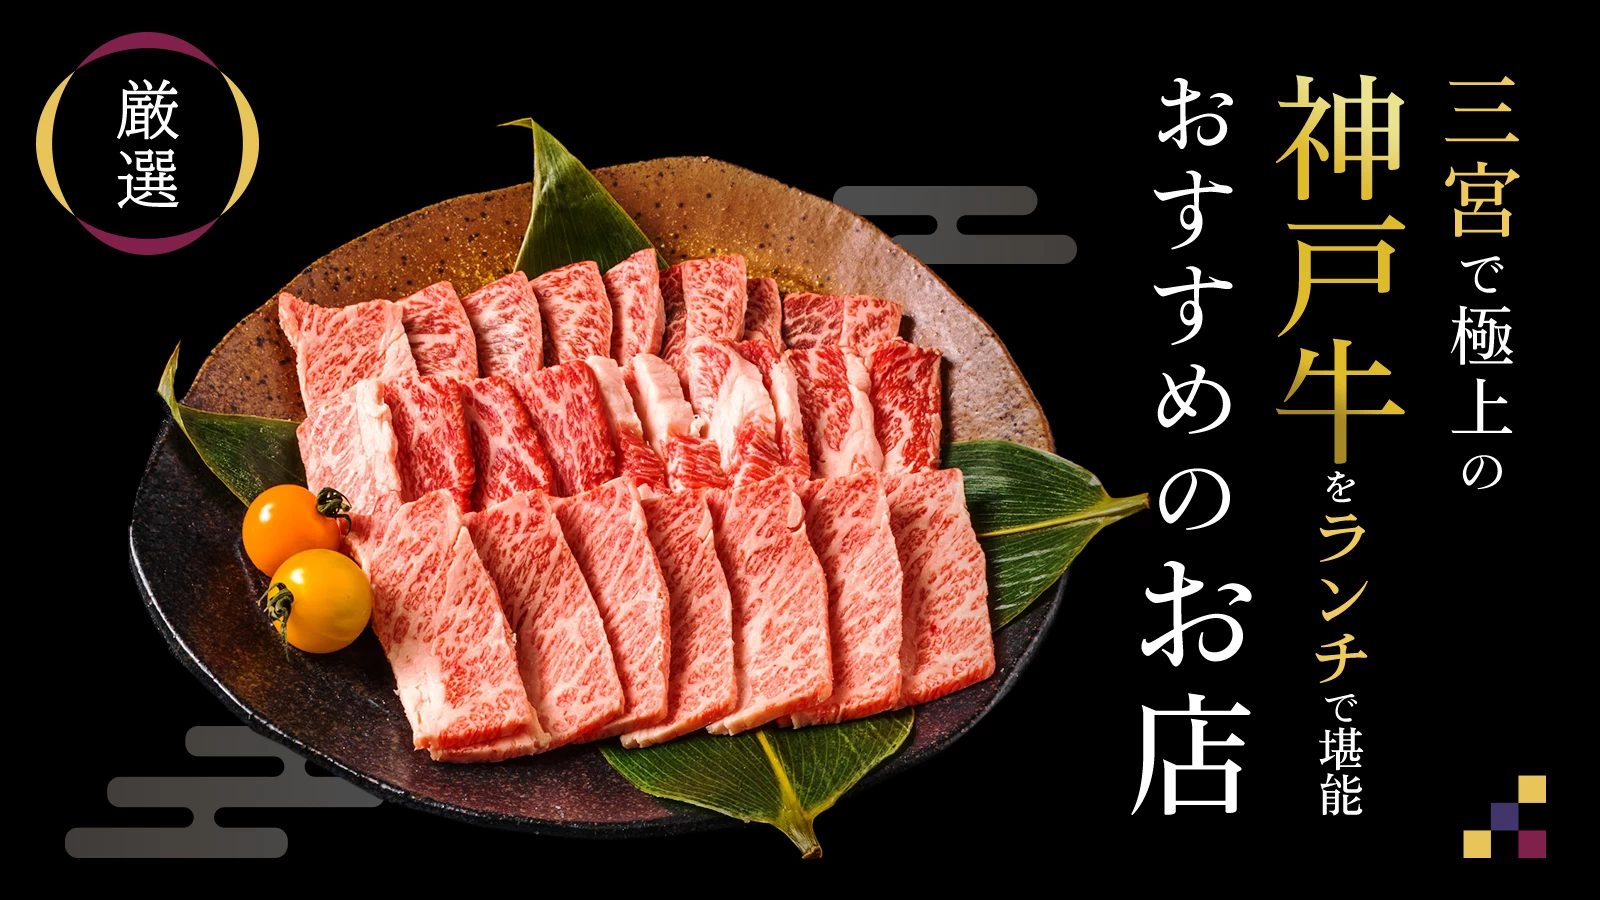 【厳選】三宮で極上の神戸牛をランチで堪能♪おすすめのお店5選